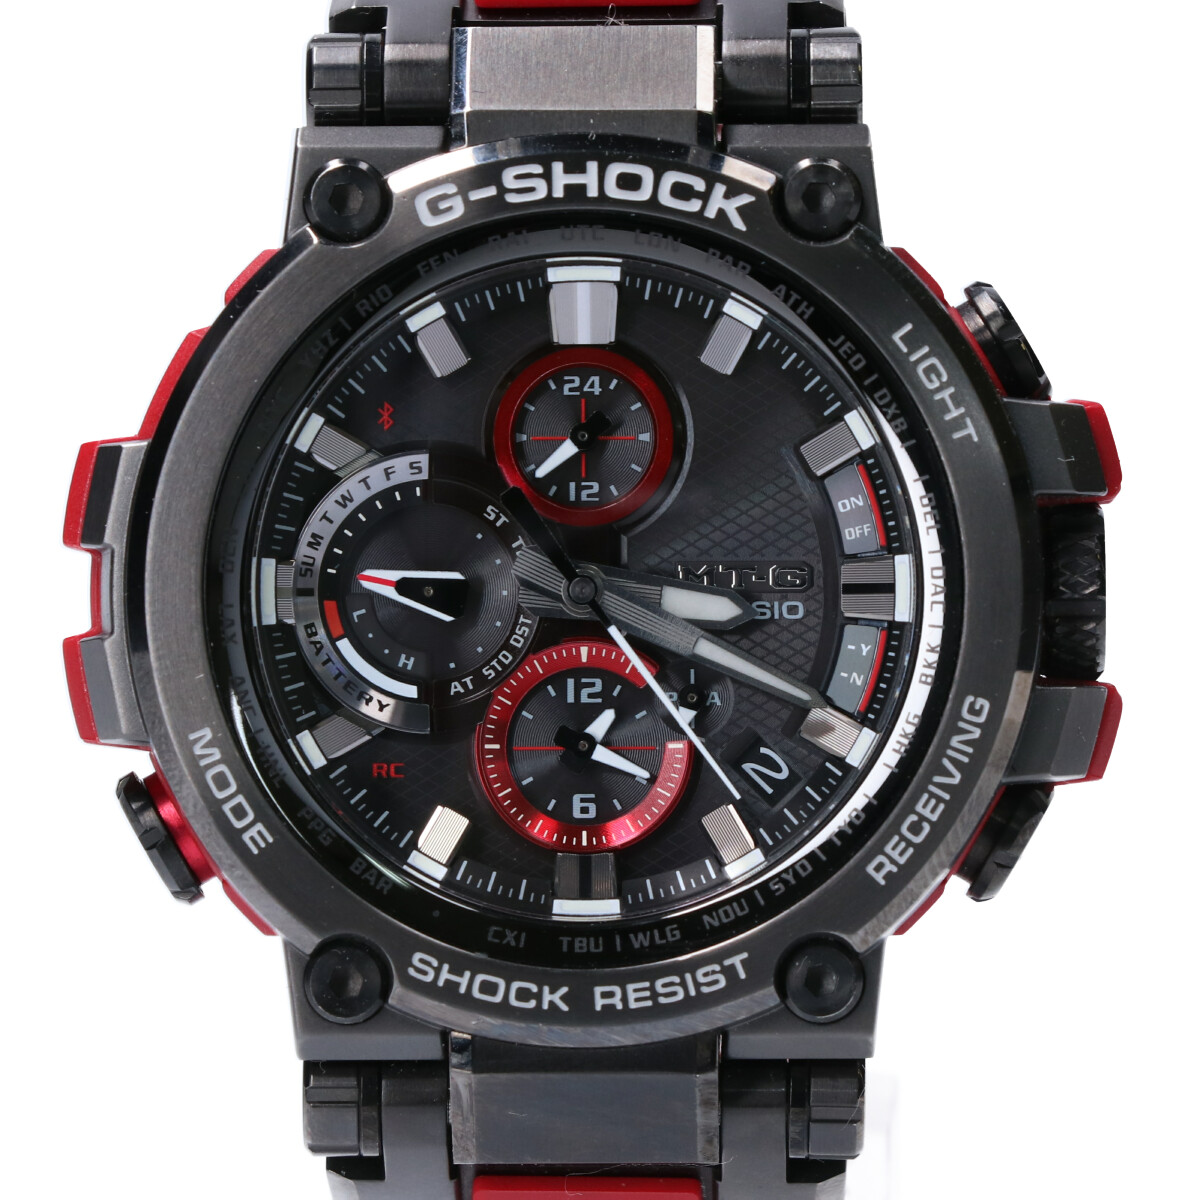 ジーショックのMTG-B1000B-1A4JF MT-G Bluetooth®搭載 電波ソーラーメタルベゼル 腕時計の買取実績です。